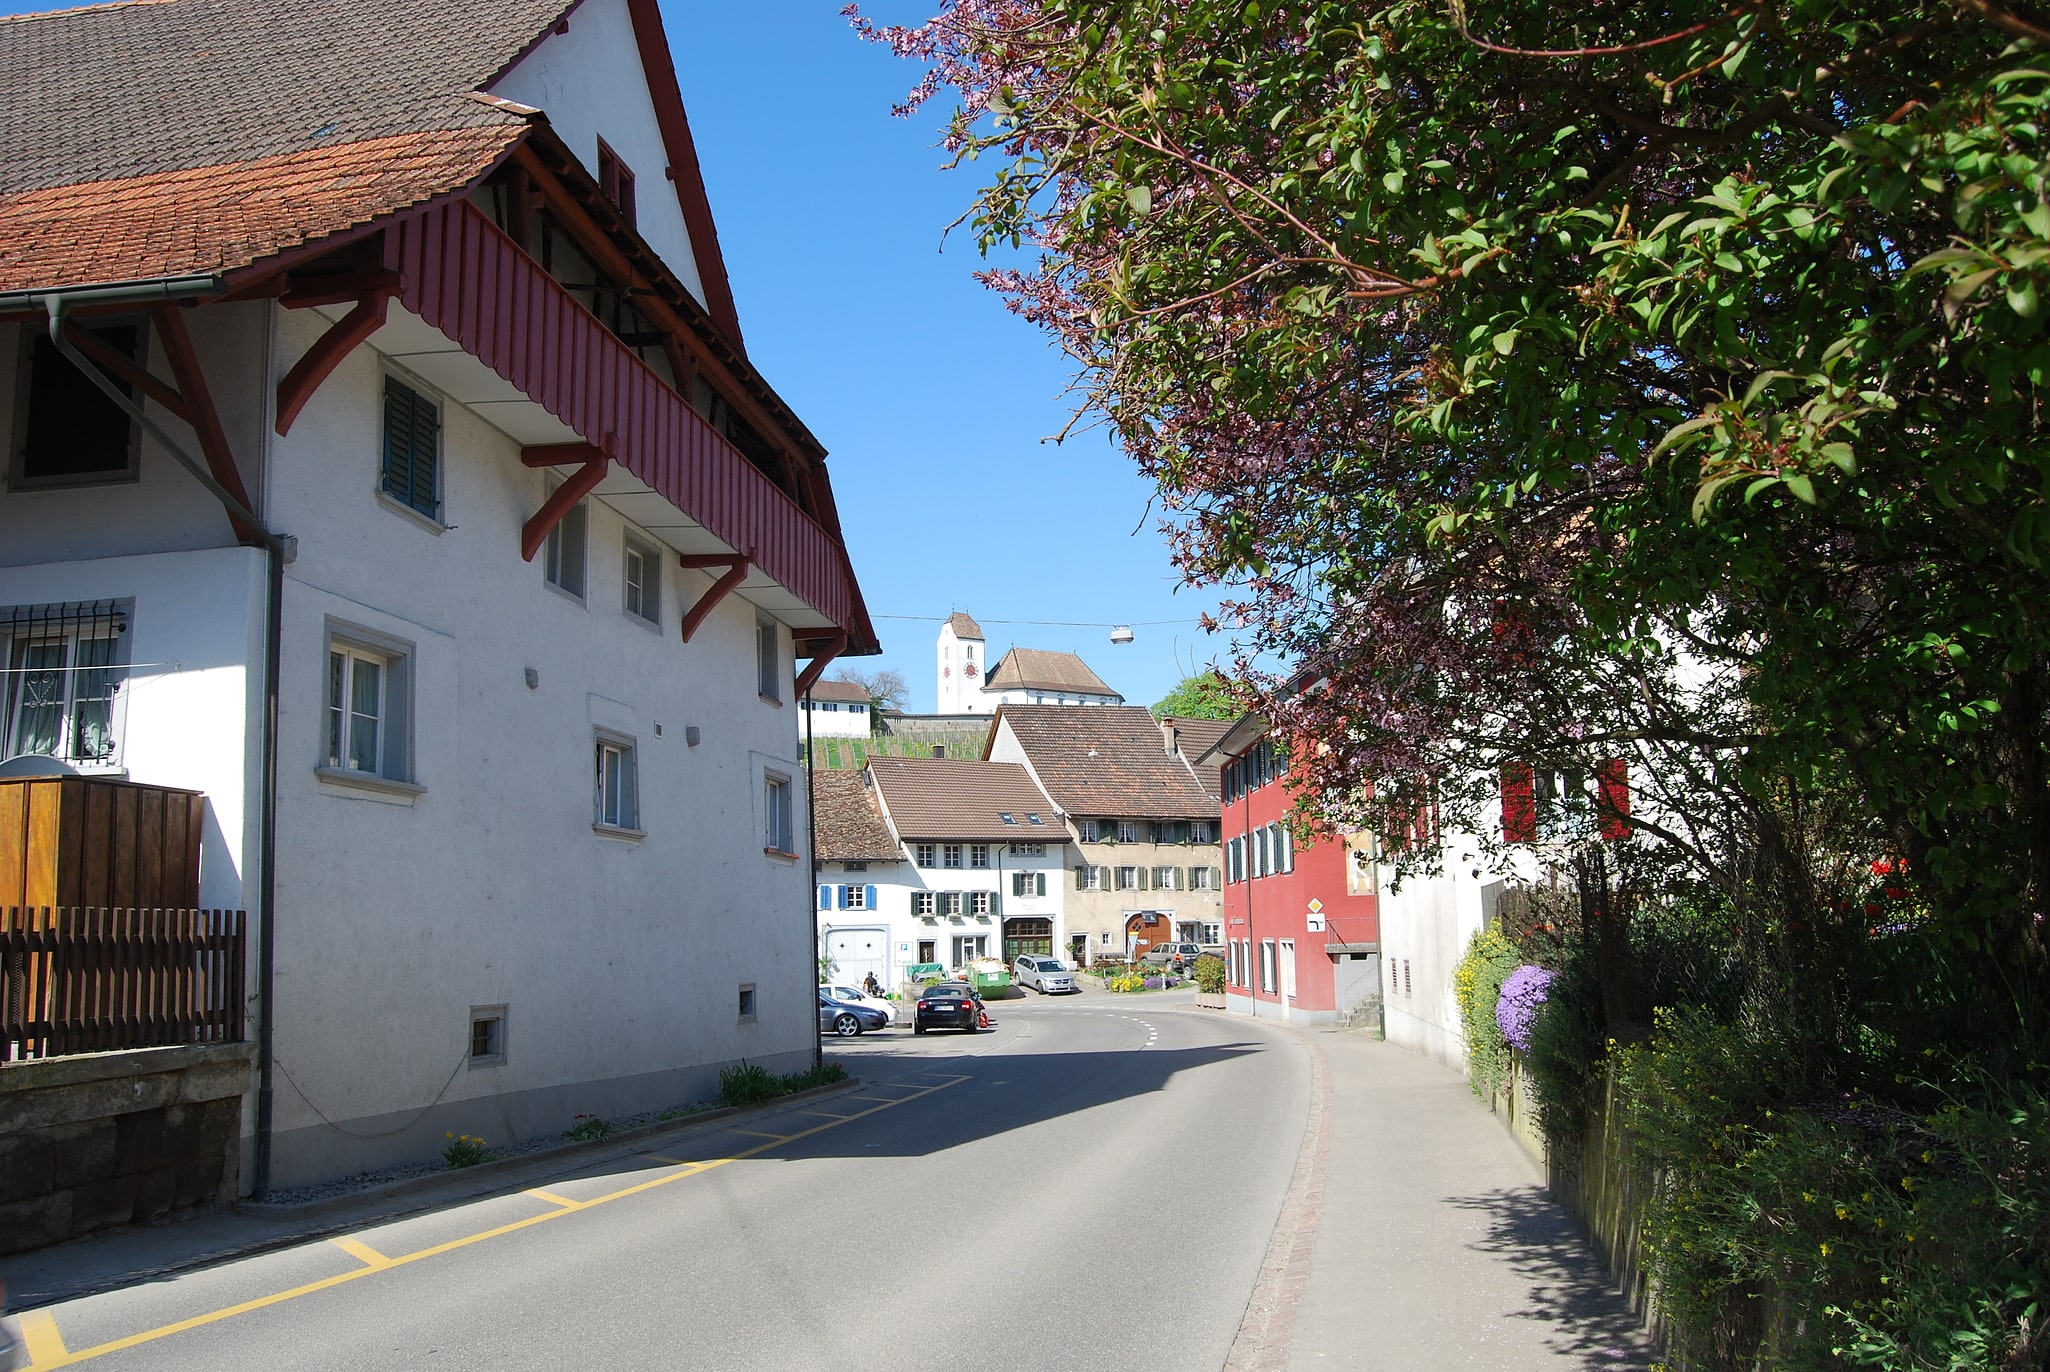 Wilchingen, Switzerland